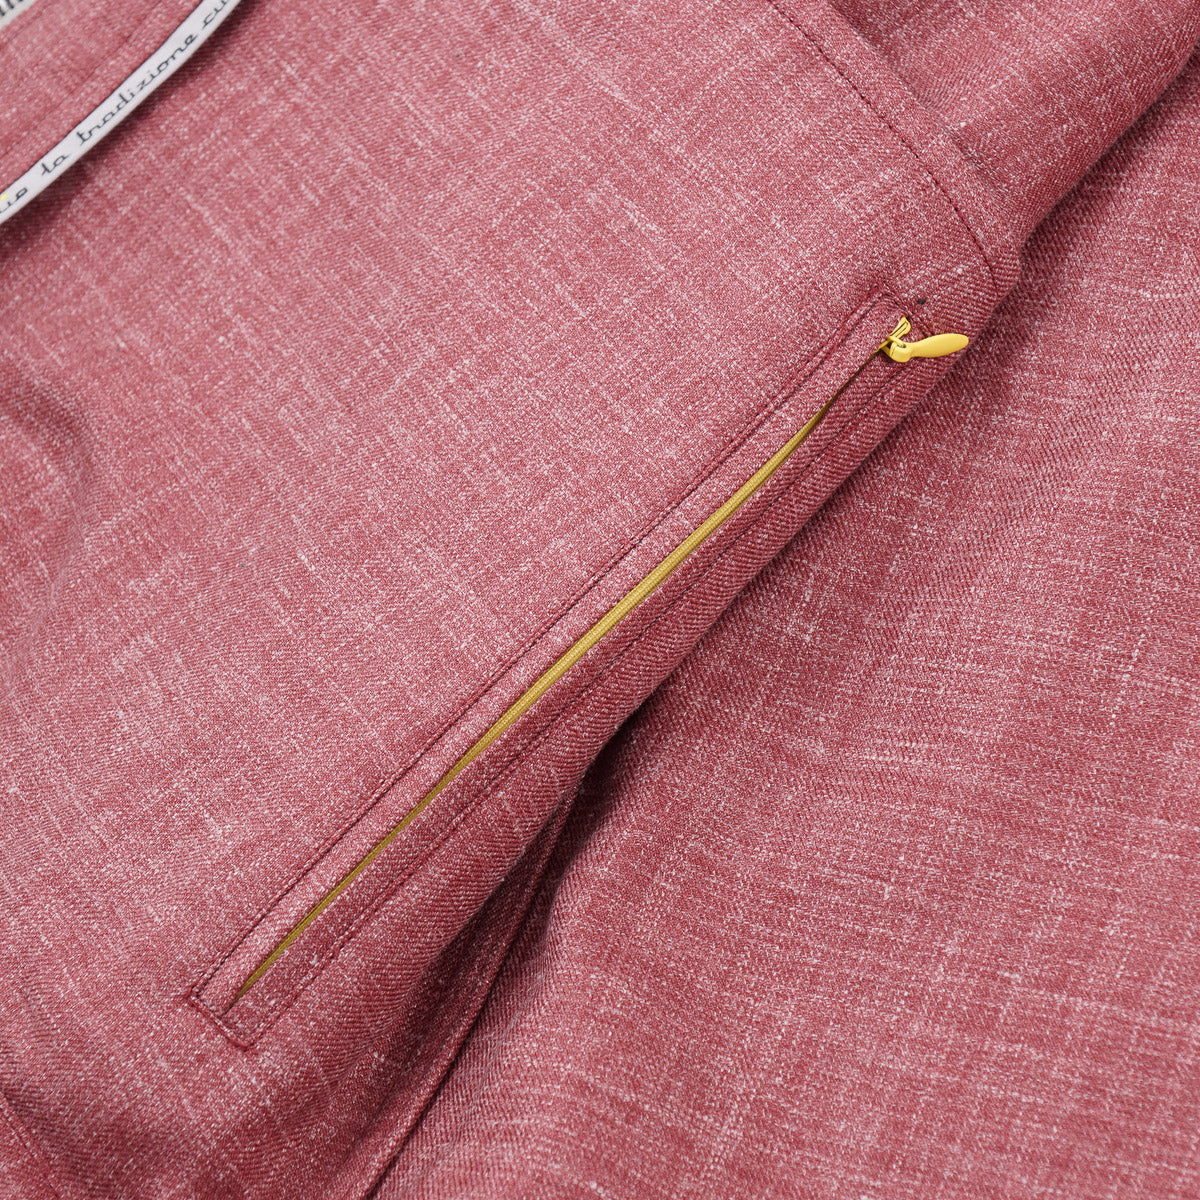 Sartorio Lightweight Wool-Blend Jacket - Top Shelf Apparel